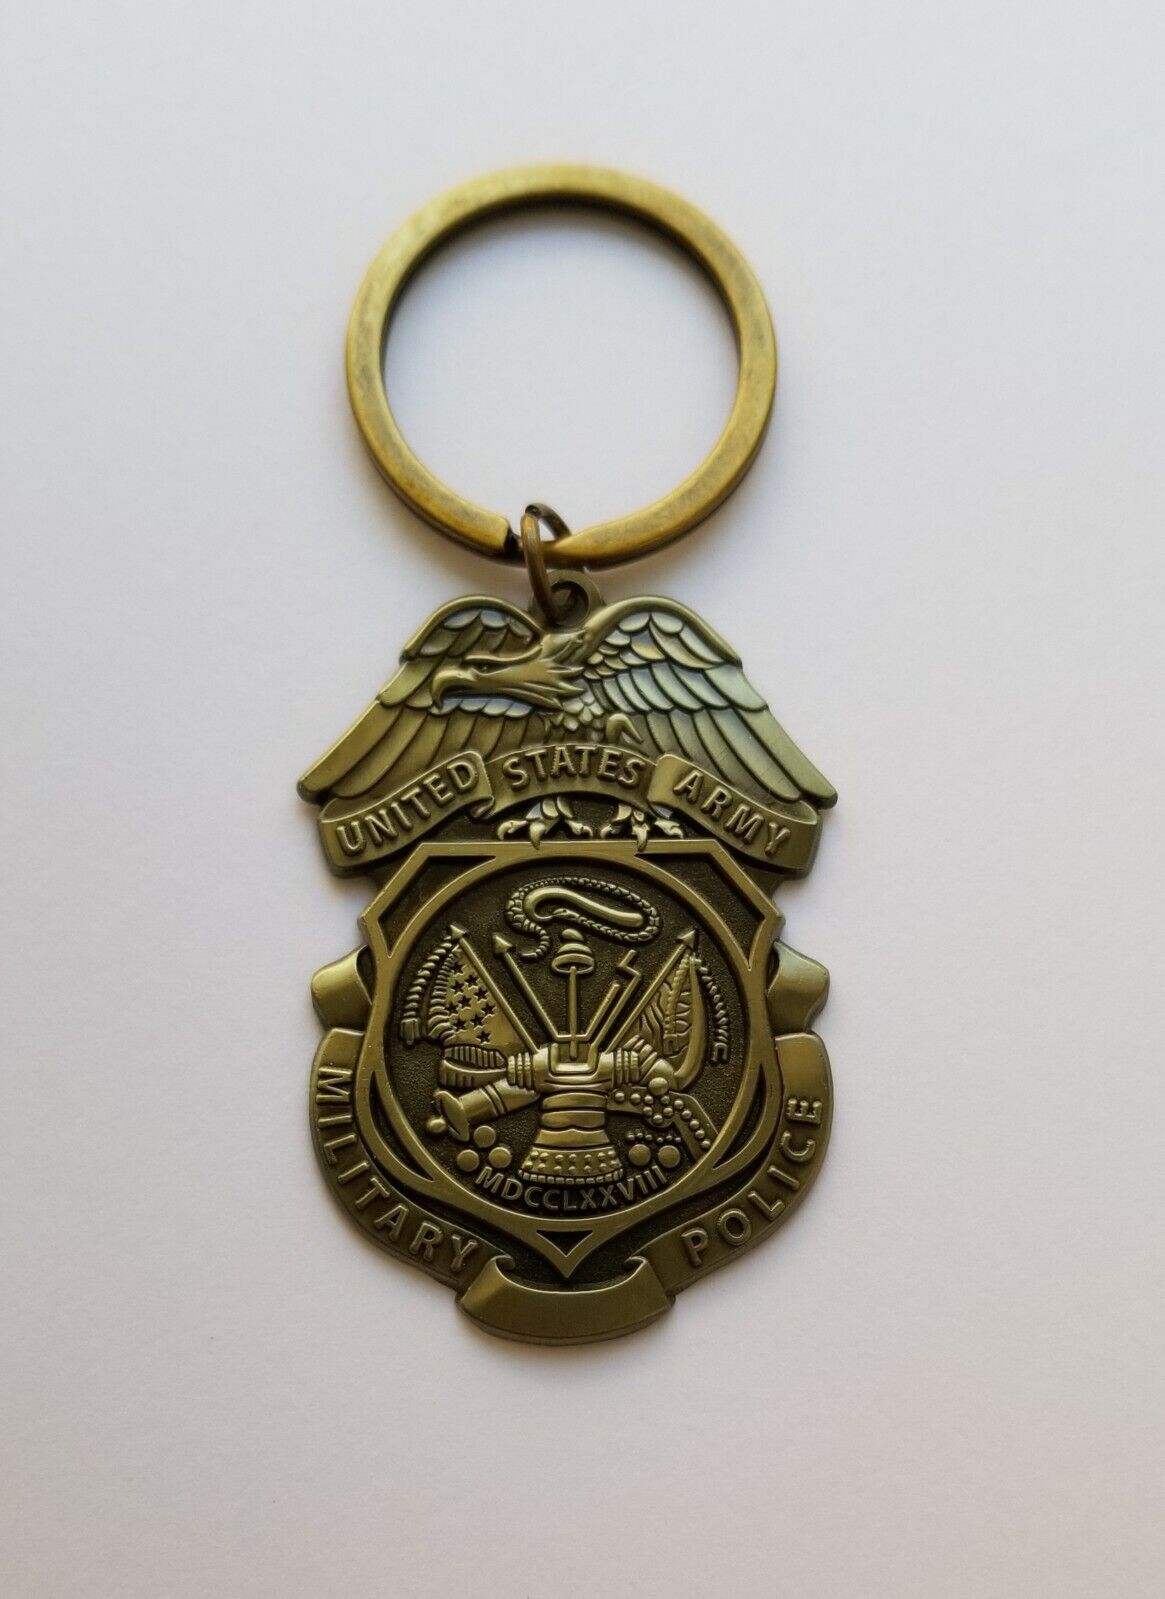 U.S Army Military Police Mini Badge Keychain Metal Keychain 